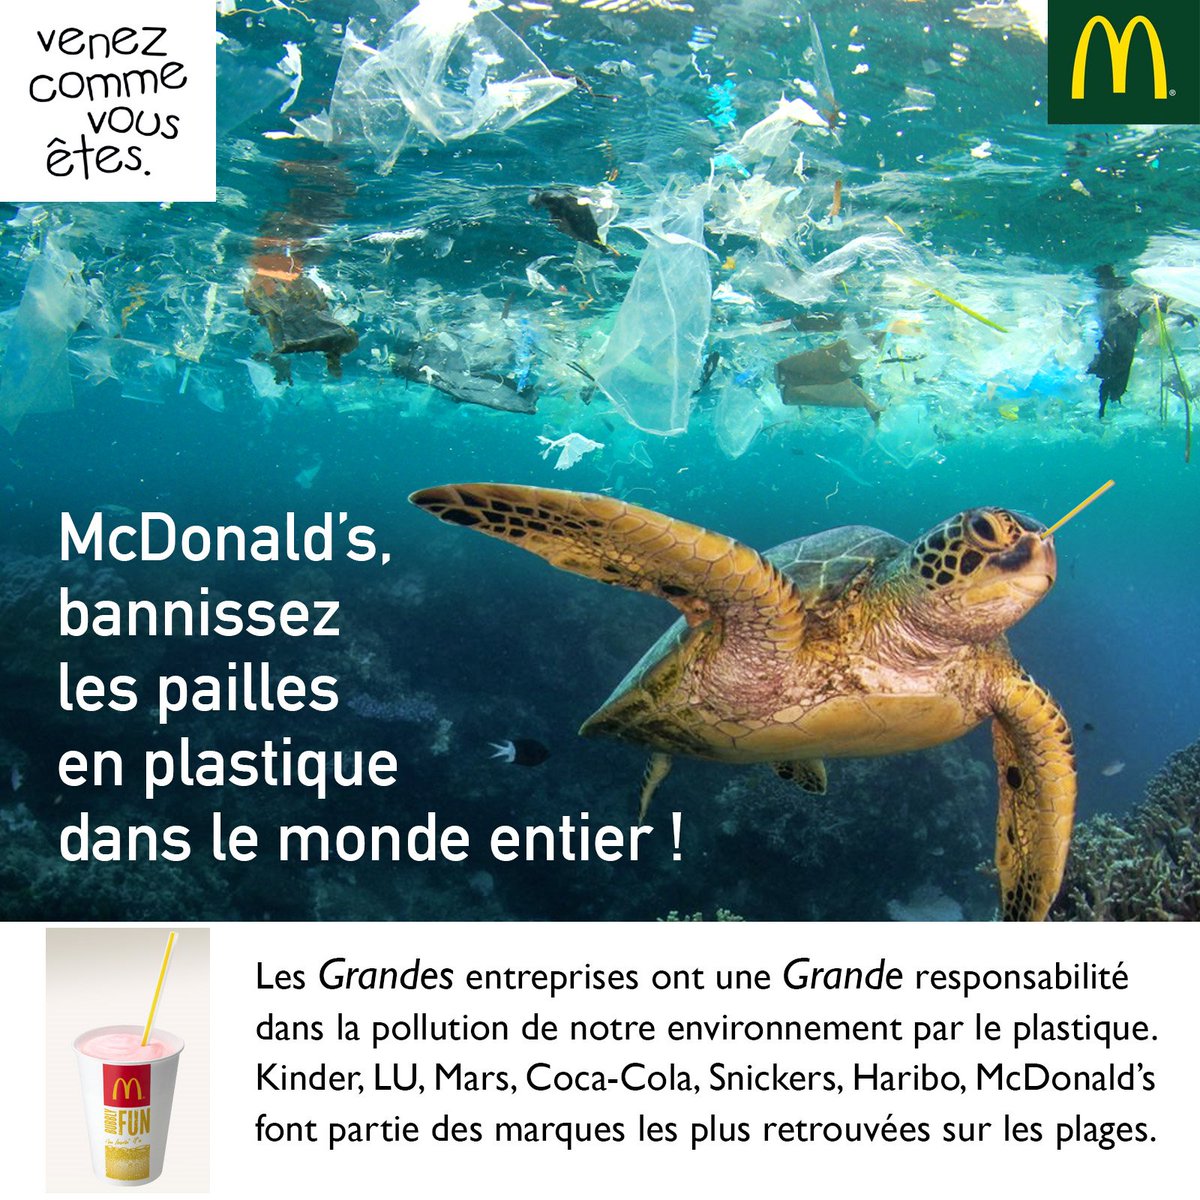 Kill the plastic on Twitter: "Les Grandes entreprises ont une Grande  responsabilité dans la pollution des #océans par les #déchets #plastiques.  @McDonalds bannissez les pailles en #plastique dans le monde entier !